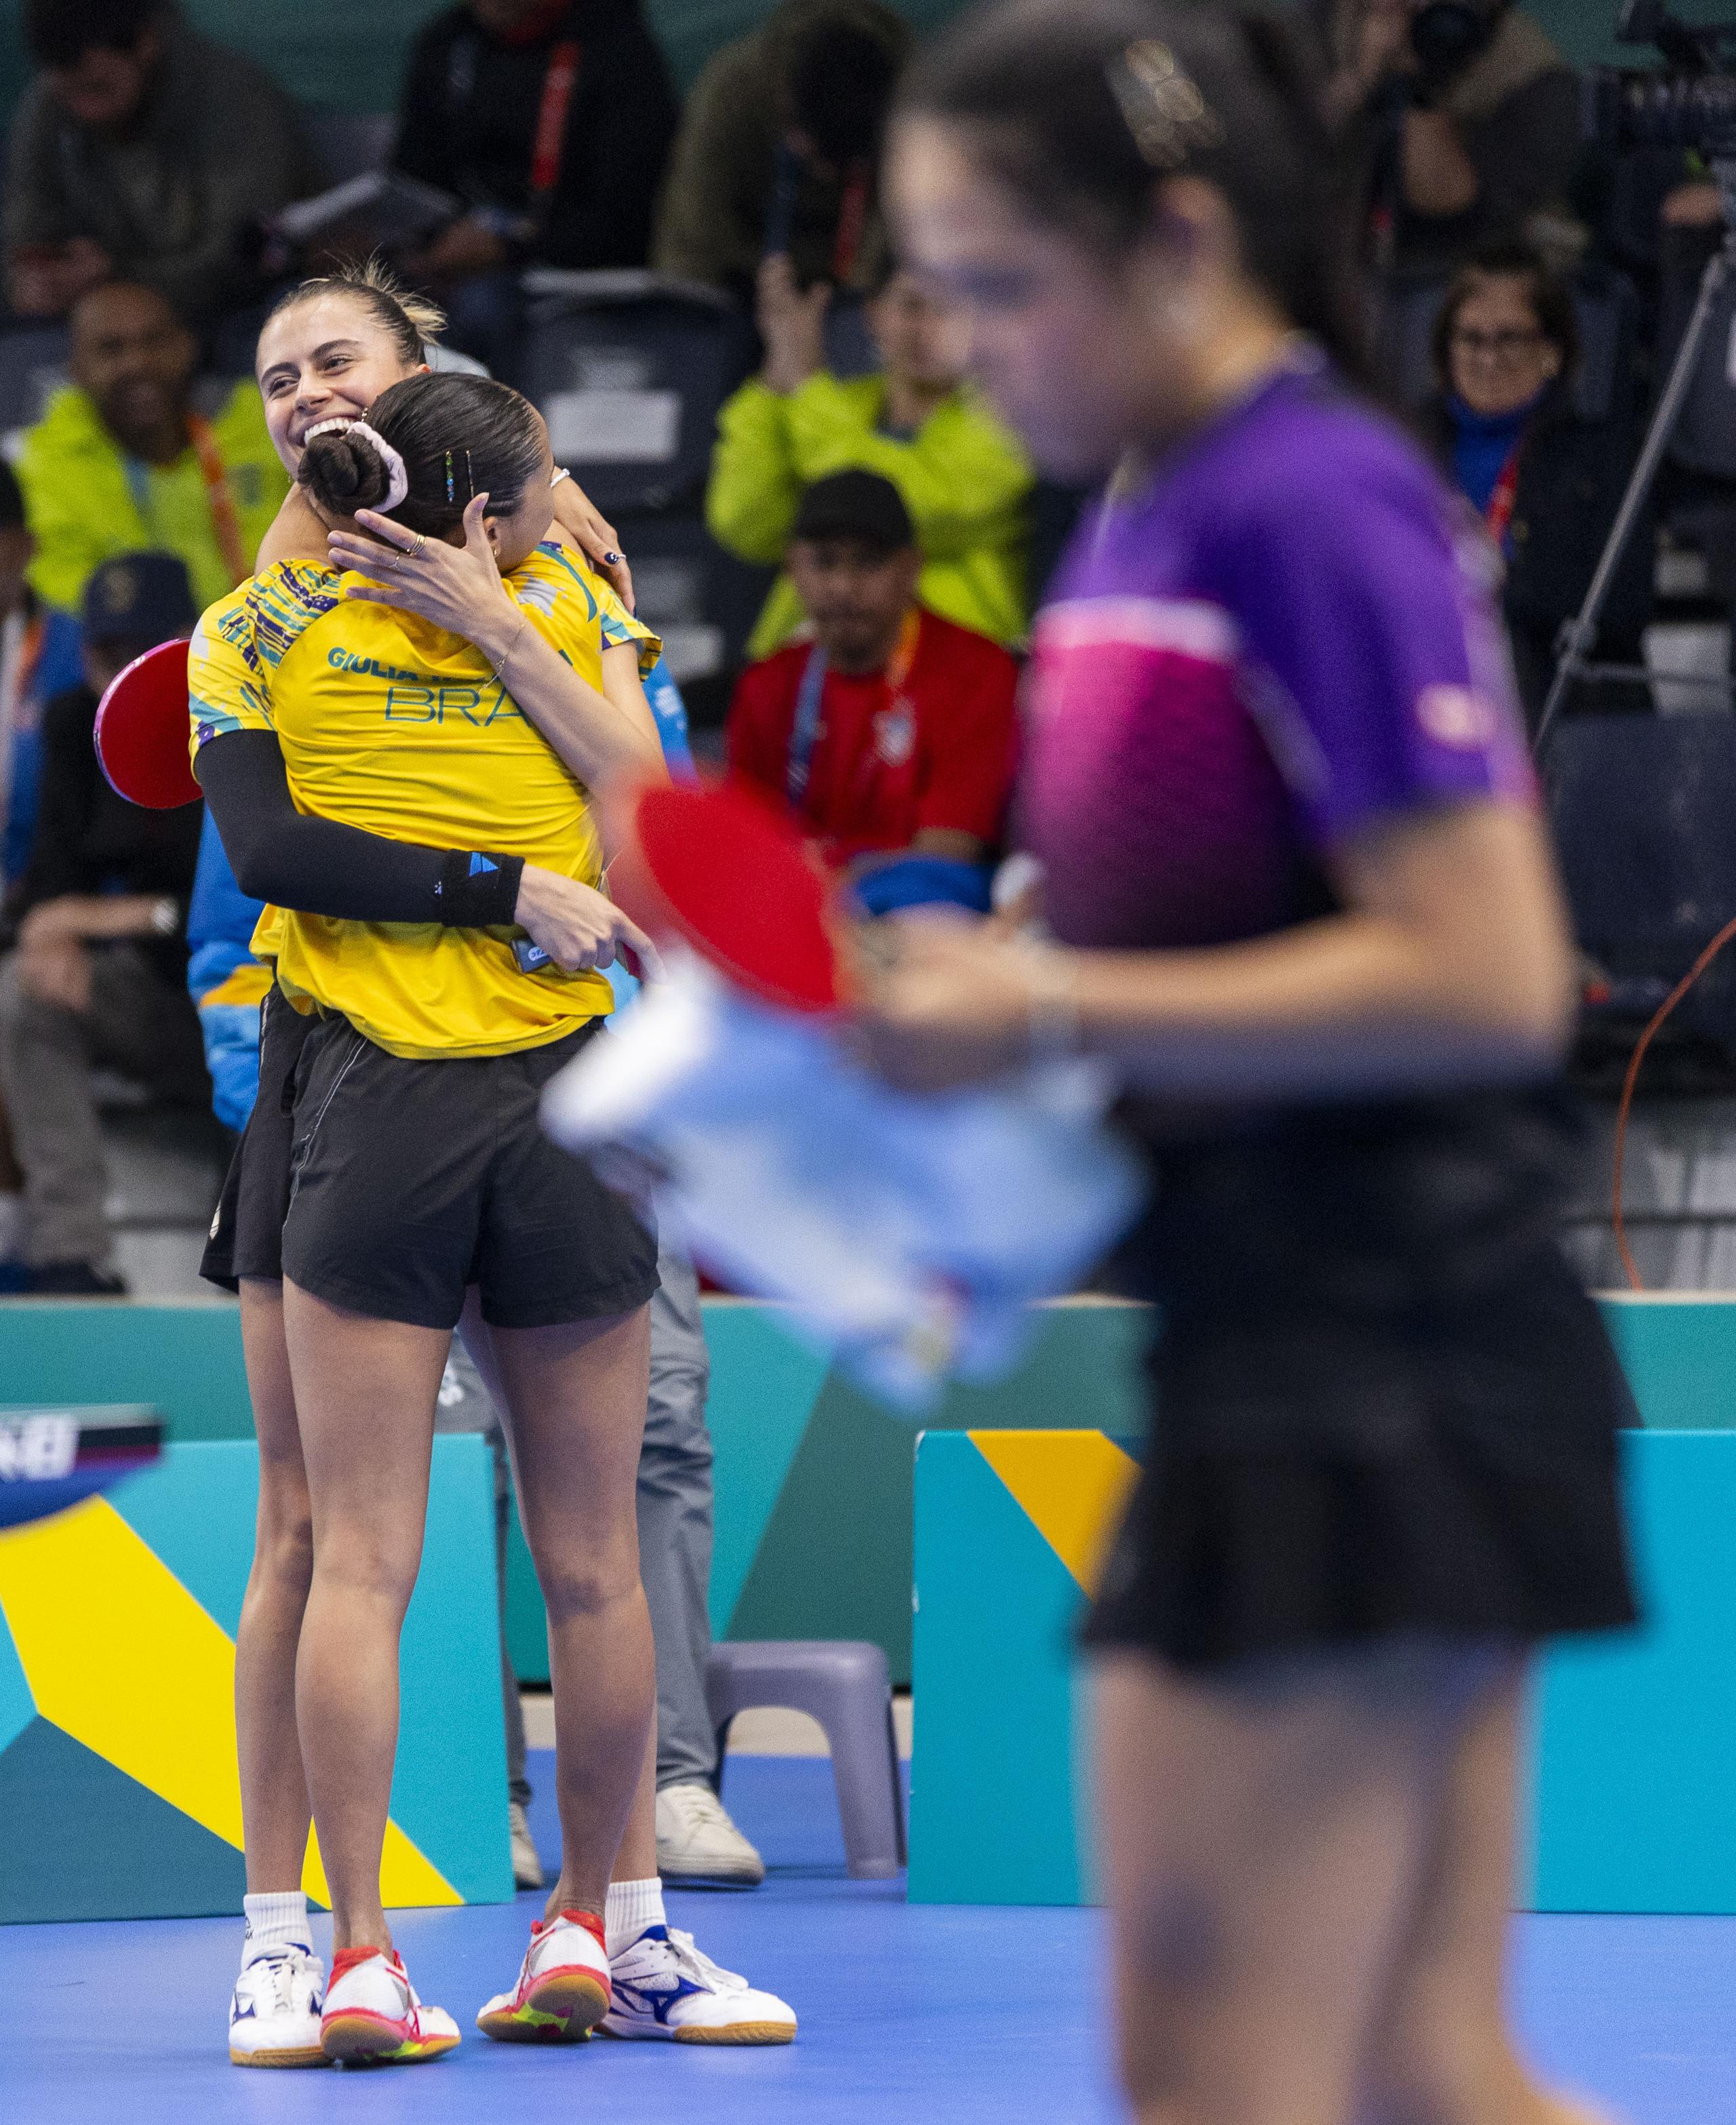 Las hermanas brasileñas Bruna y Giulia Takahashi celebran su victoria mientras al frente, fuera de foco, se puede ver a Adriana Díaz mostrando la tristeza del revés.